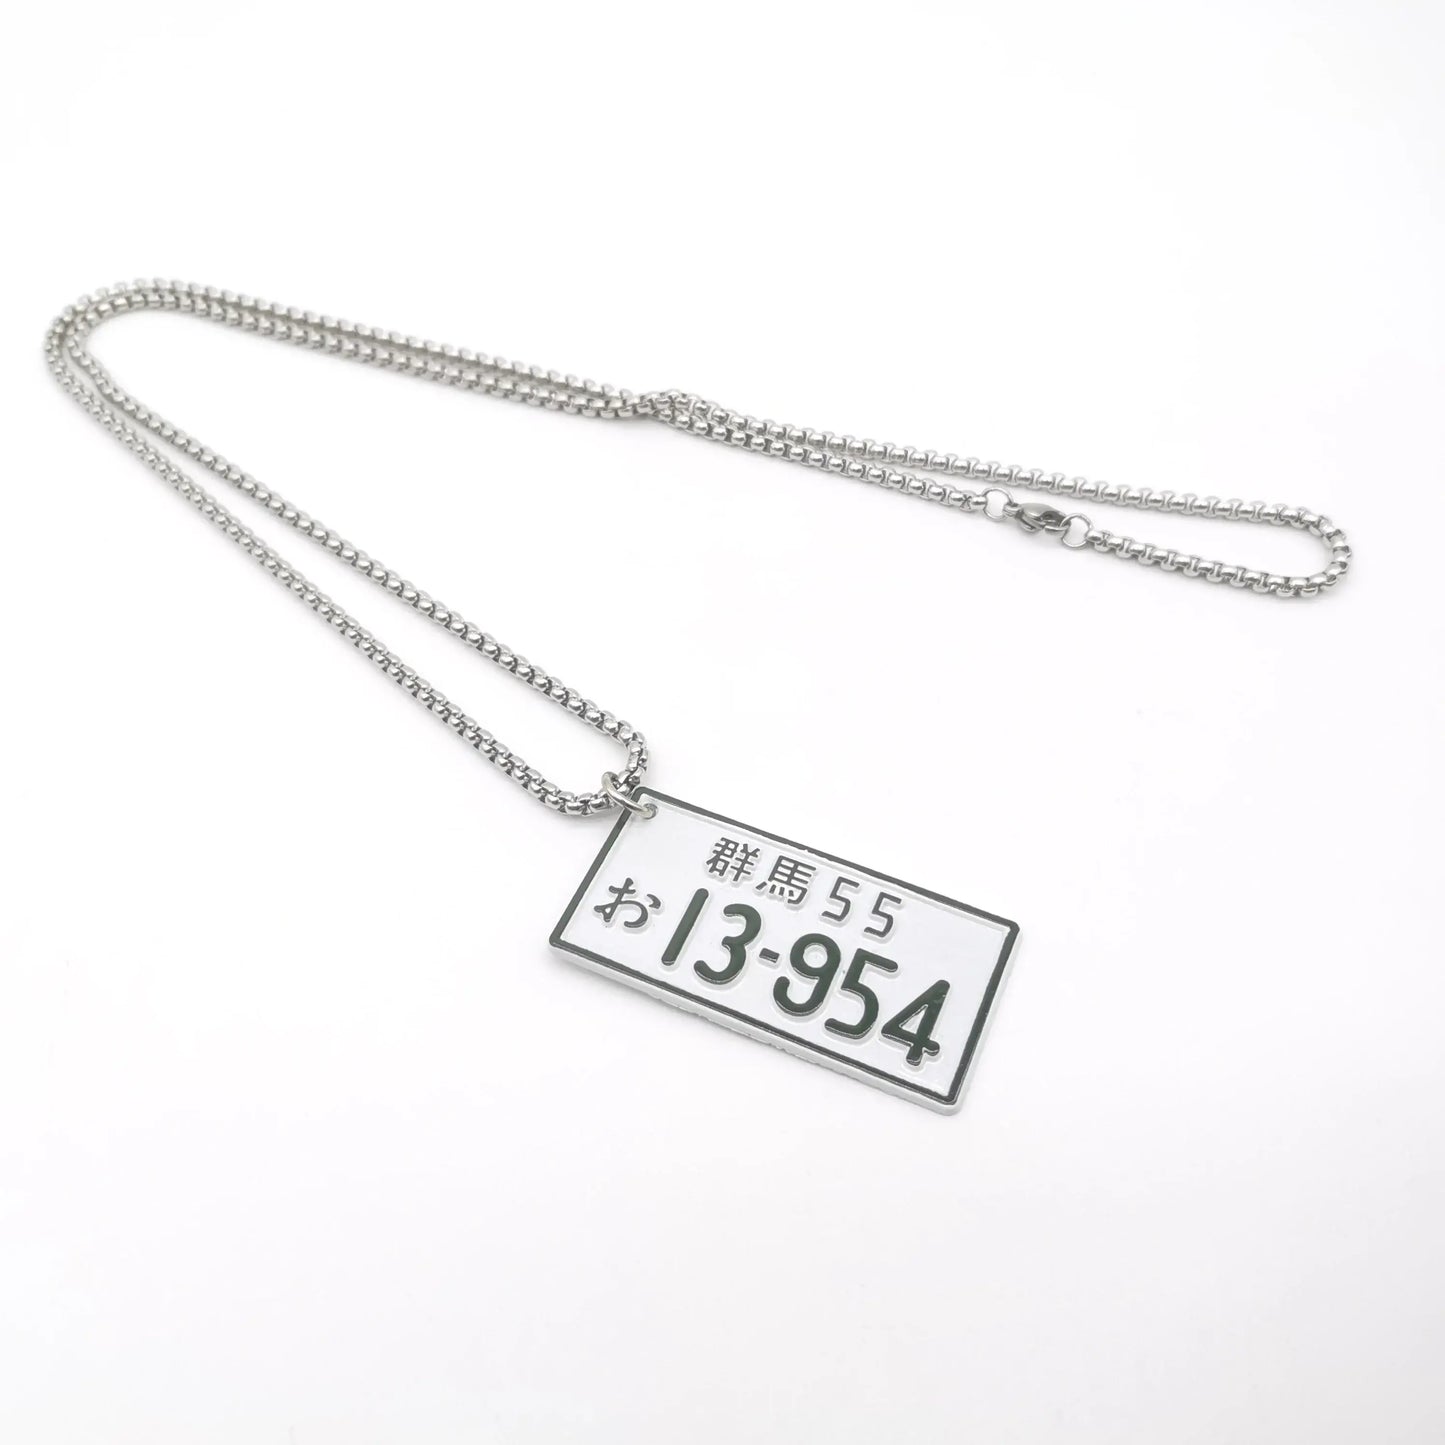 13 - 954 JDM Plate Necklace